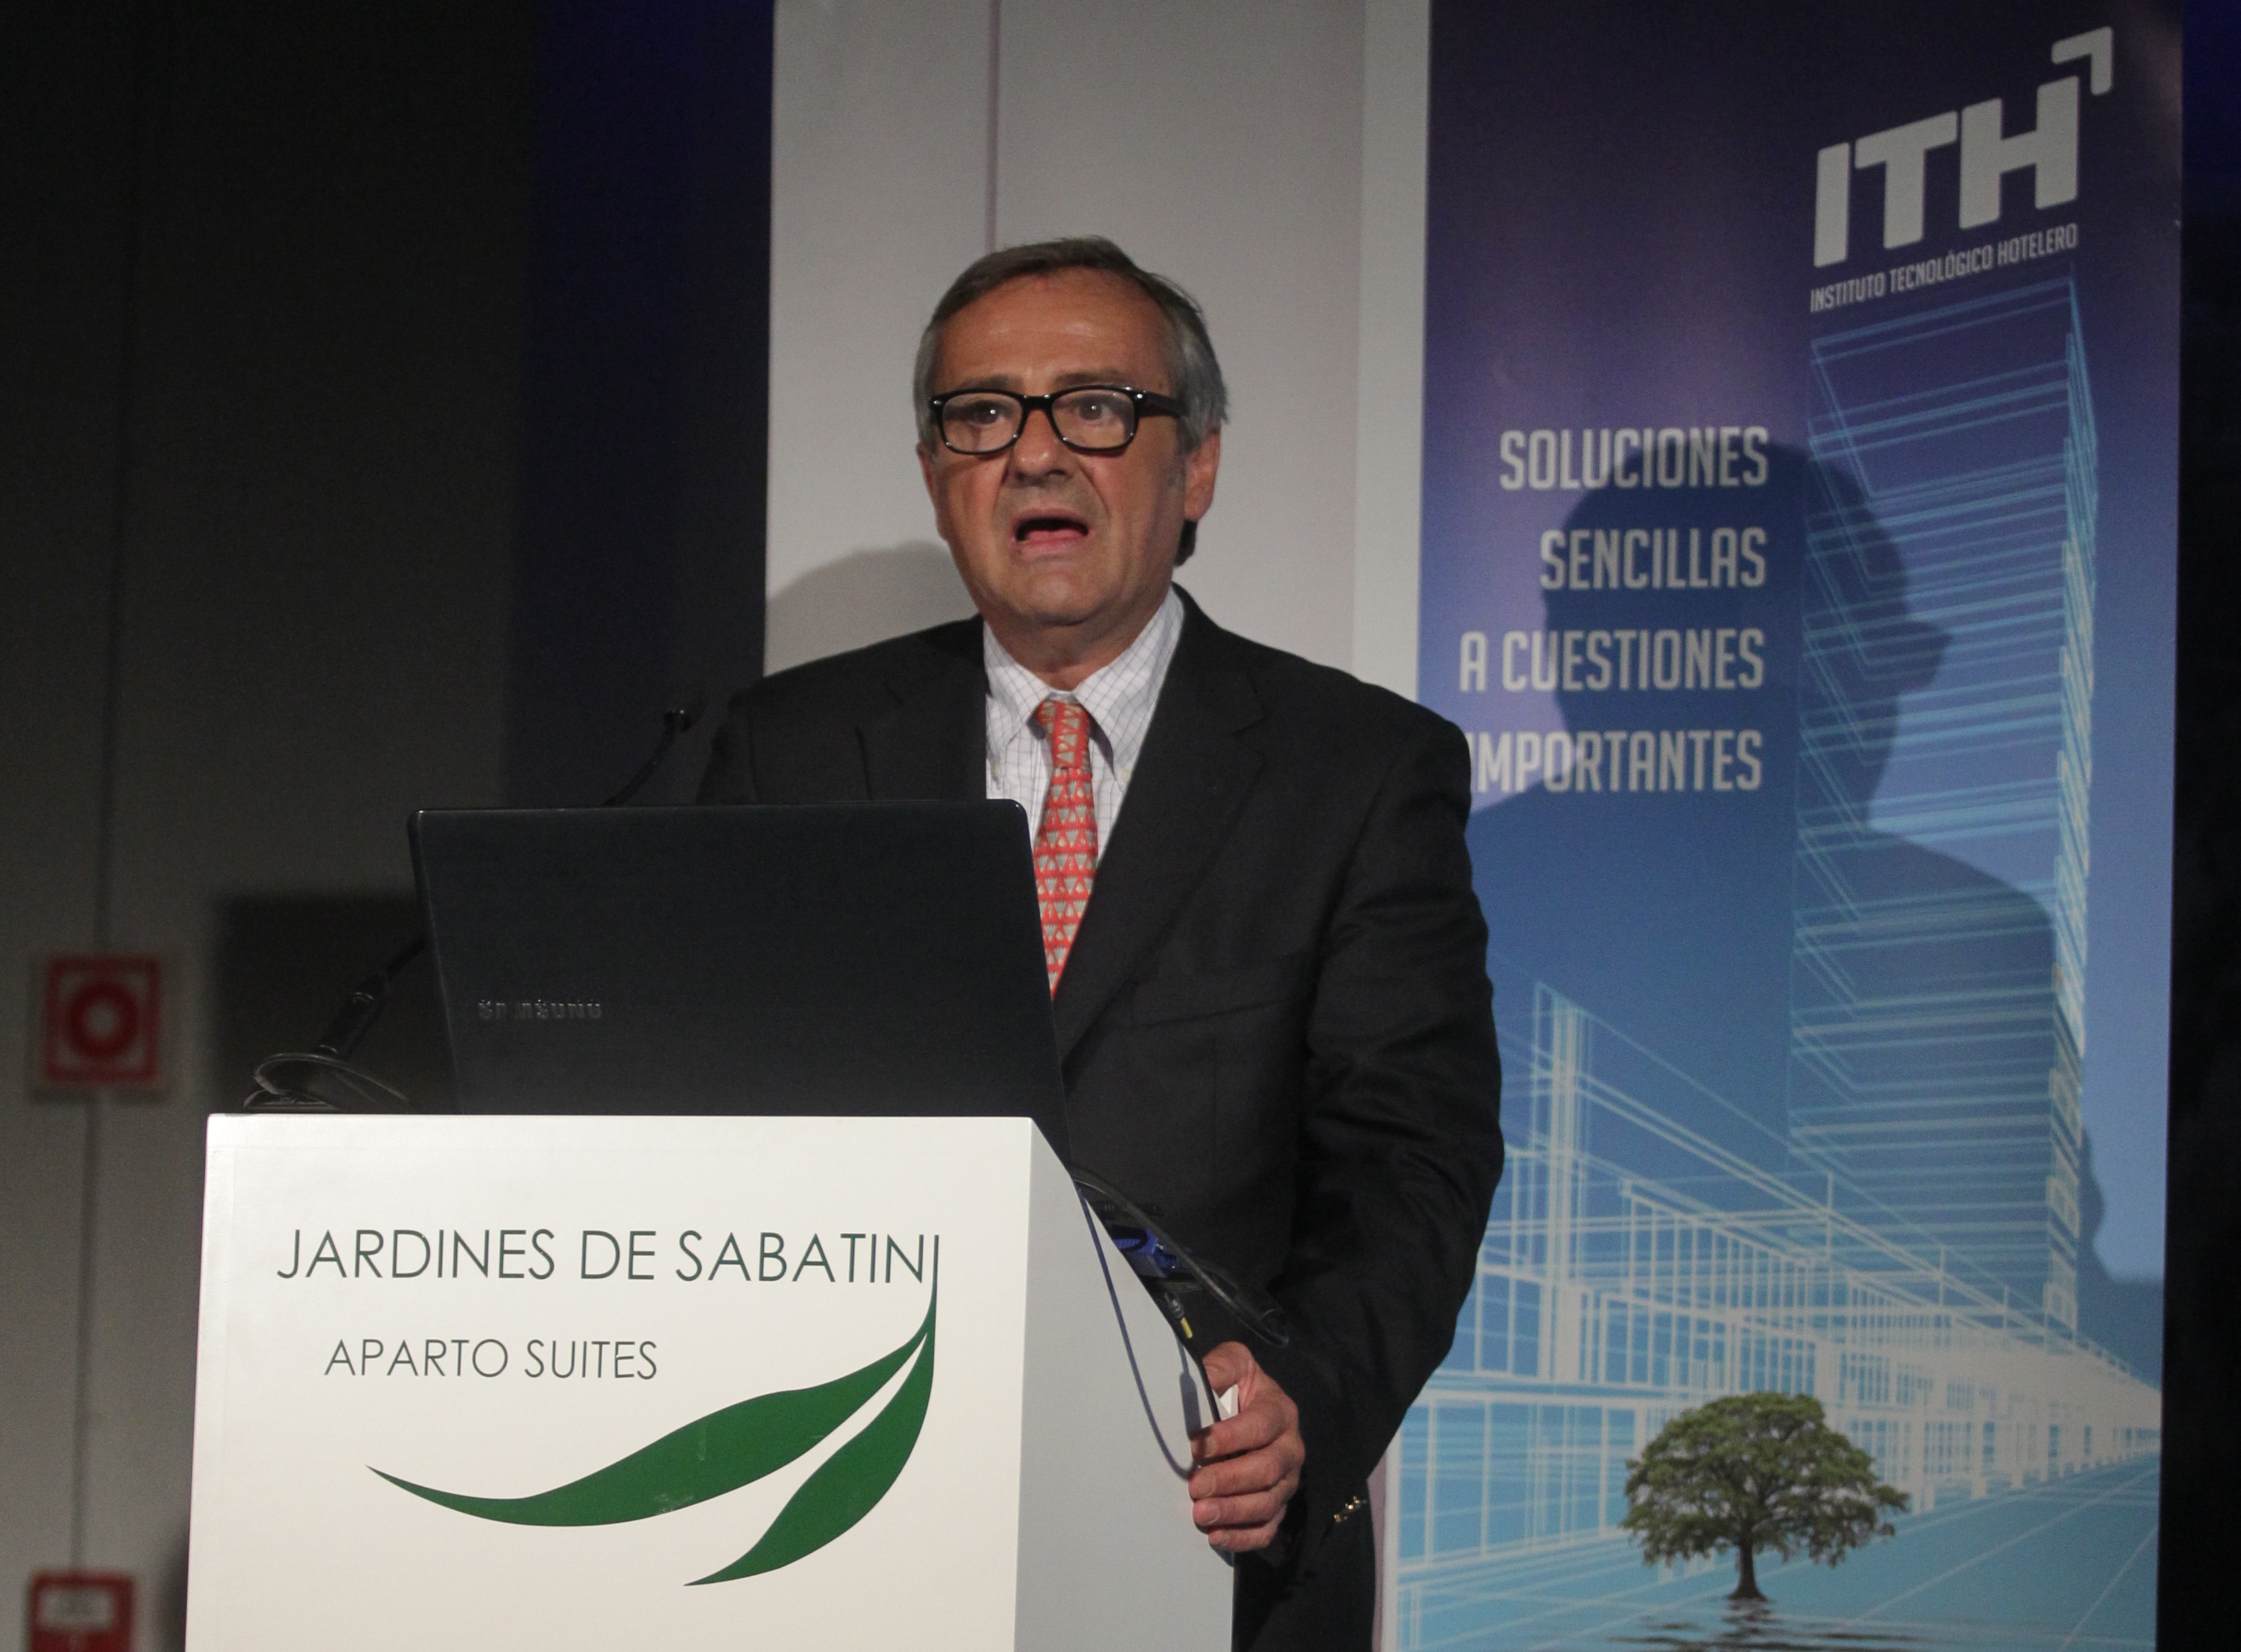 Joaquín del Castillo, director general de Turismo de la Comunidad de Madrid, recordó los lazos que unen a ITH a esta región, desde sus orígenes.